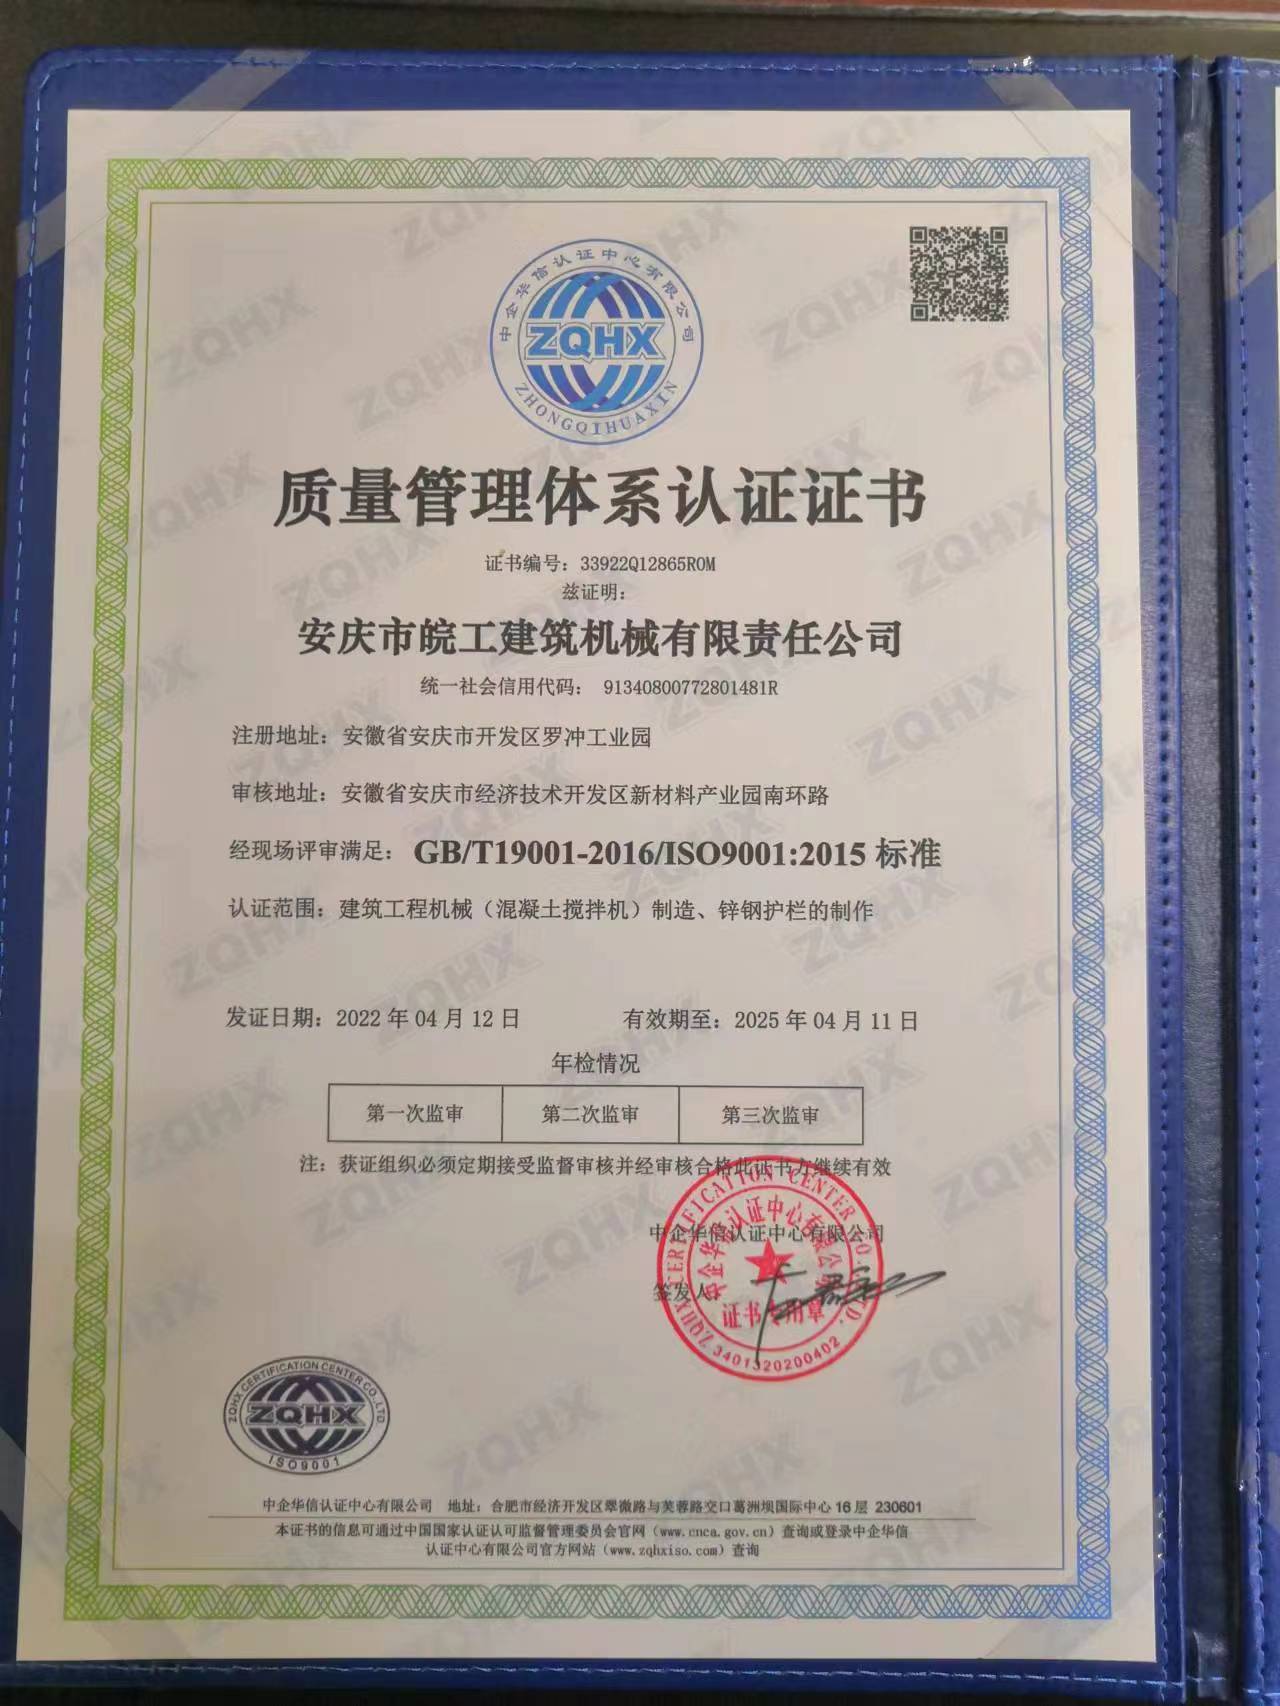 質量管理體系認證證書中文版2022年